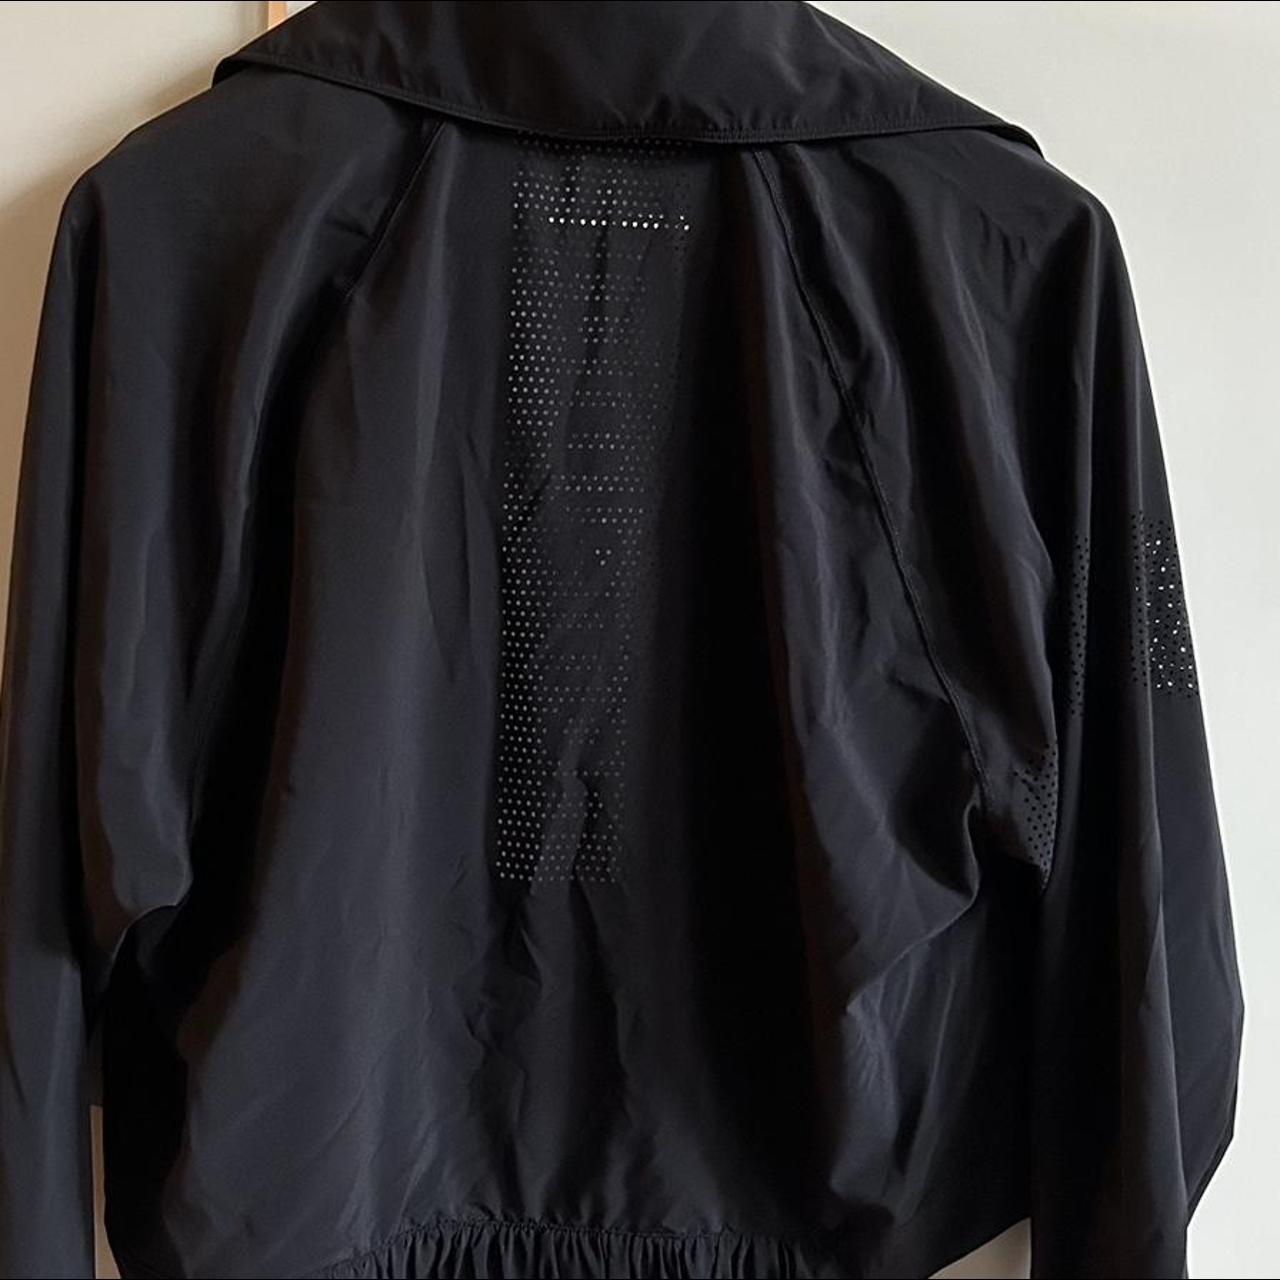 Lululemon black jacket with detail on the back -... - Depop